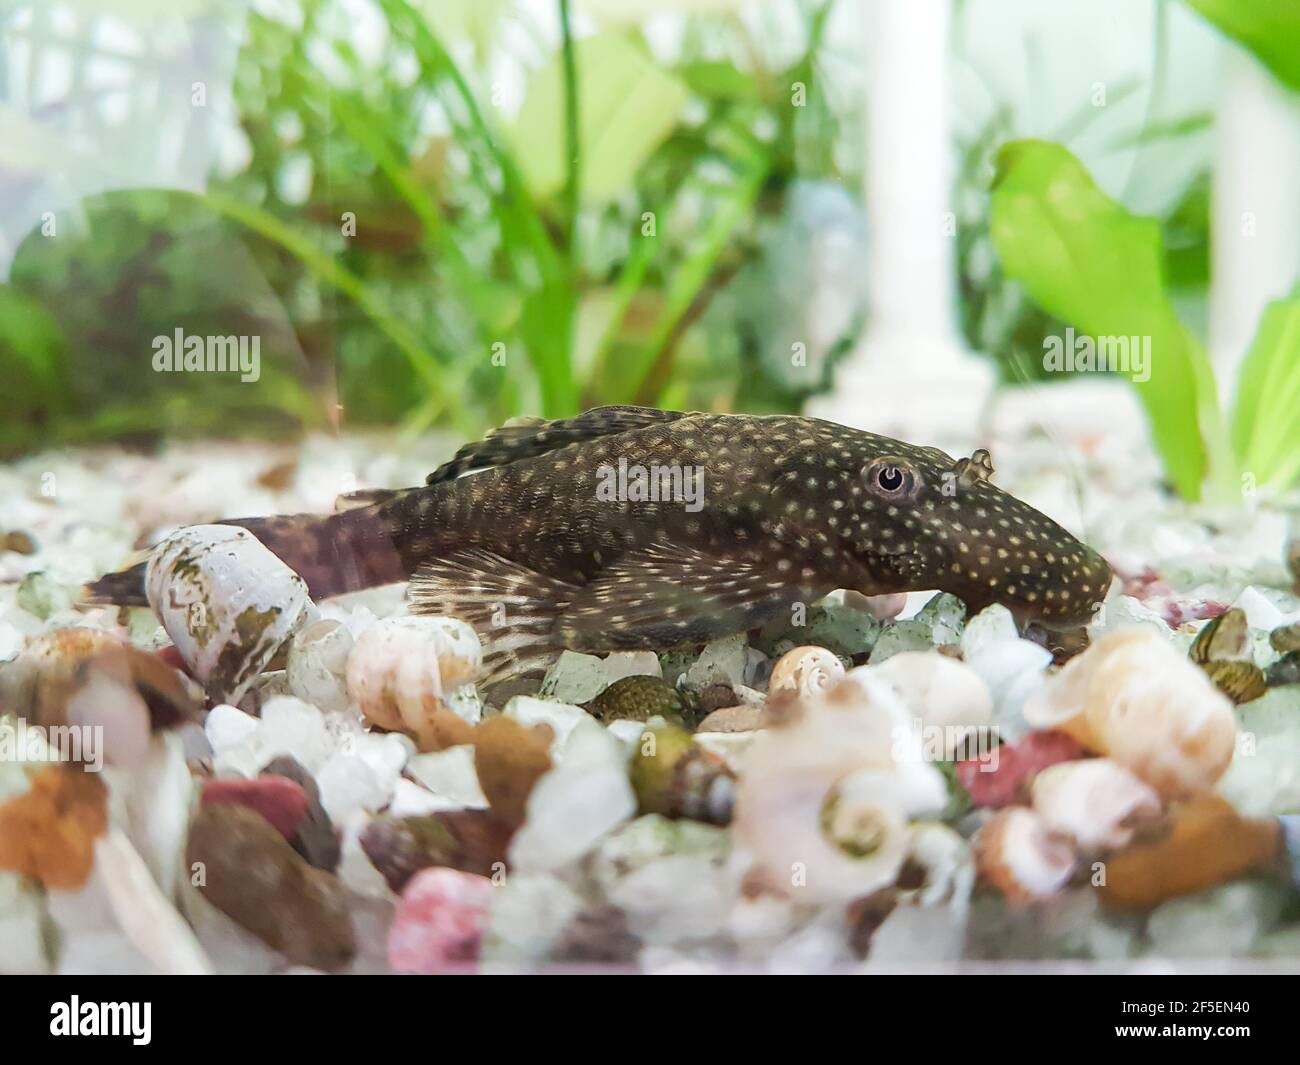 Ancistrus fish in a aquarium Stock Photo